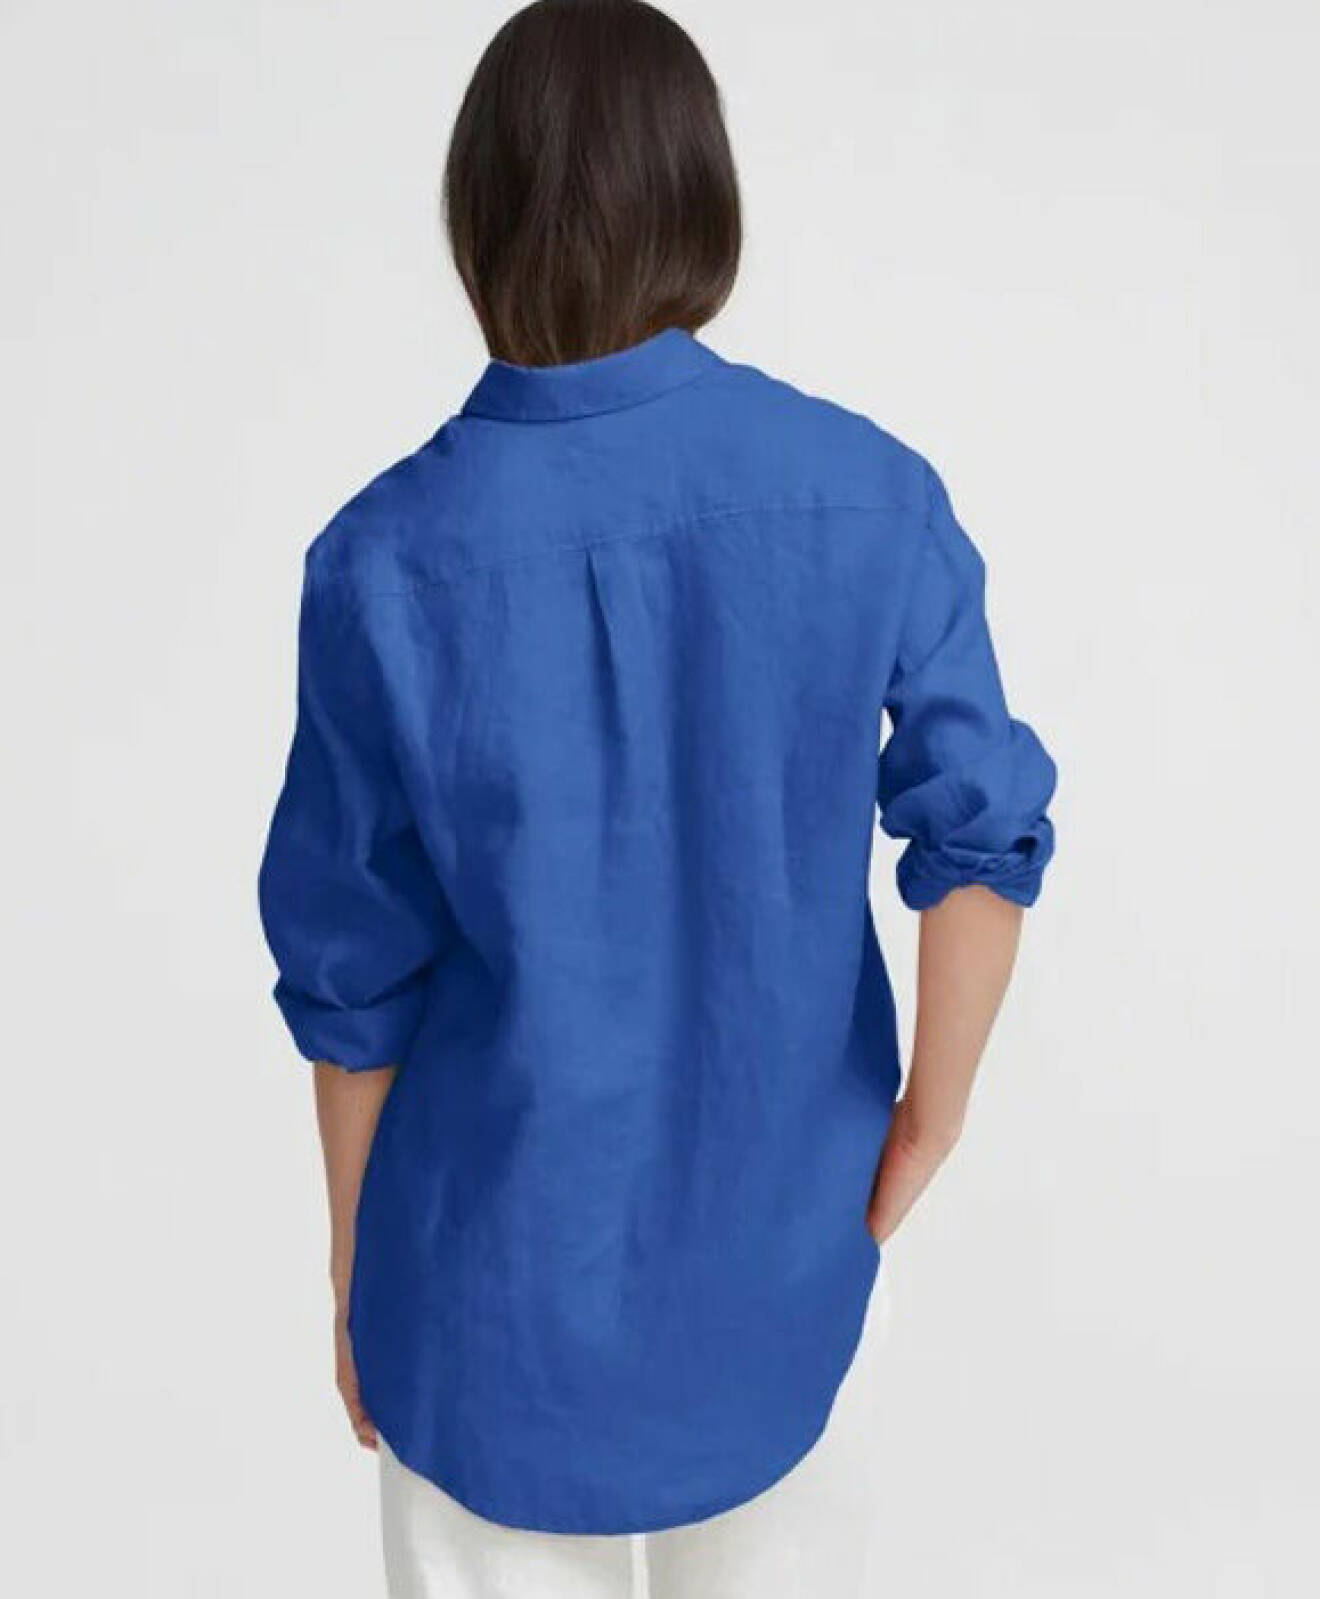 modenyheter dam våren 2022 – blå linneskjorta för dam från Milook